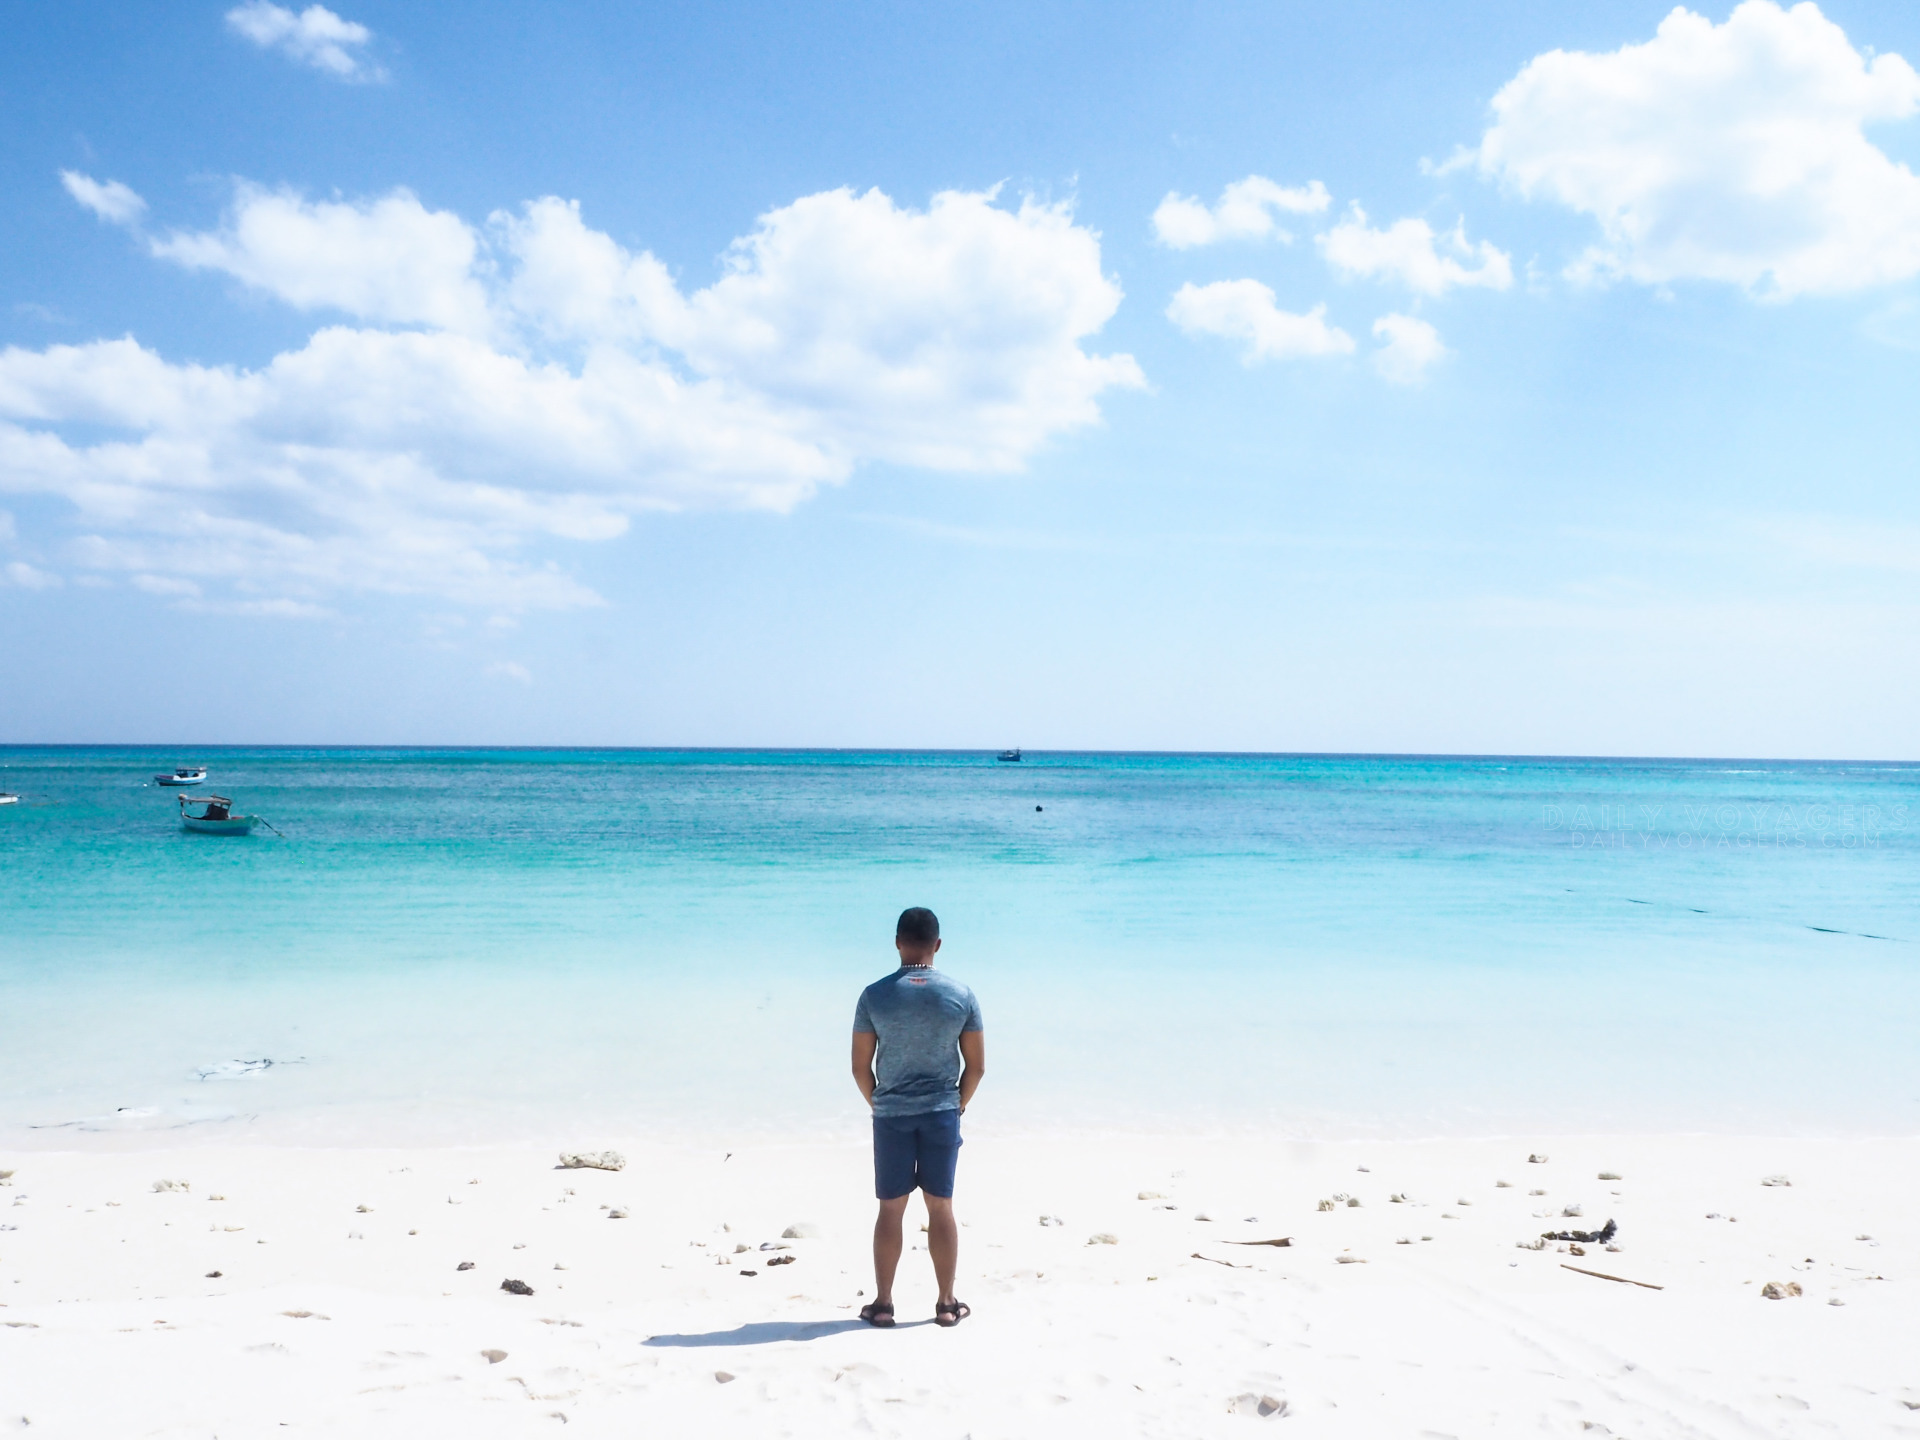 5 Pantai Cantik Yang Menjadi Surga Wisata Di Pulau Semau